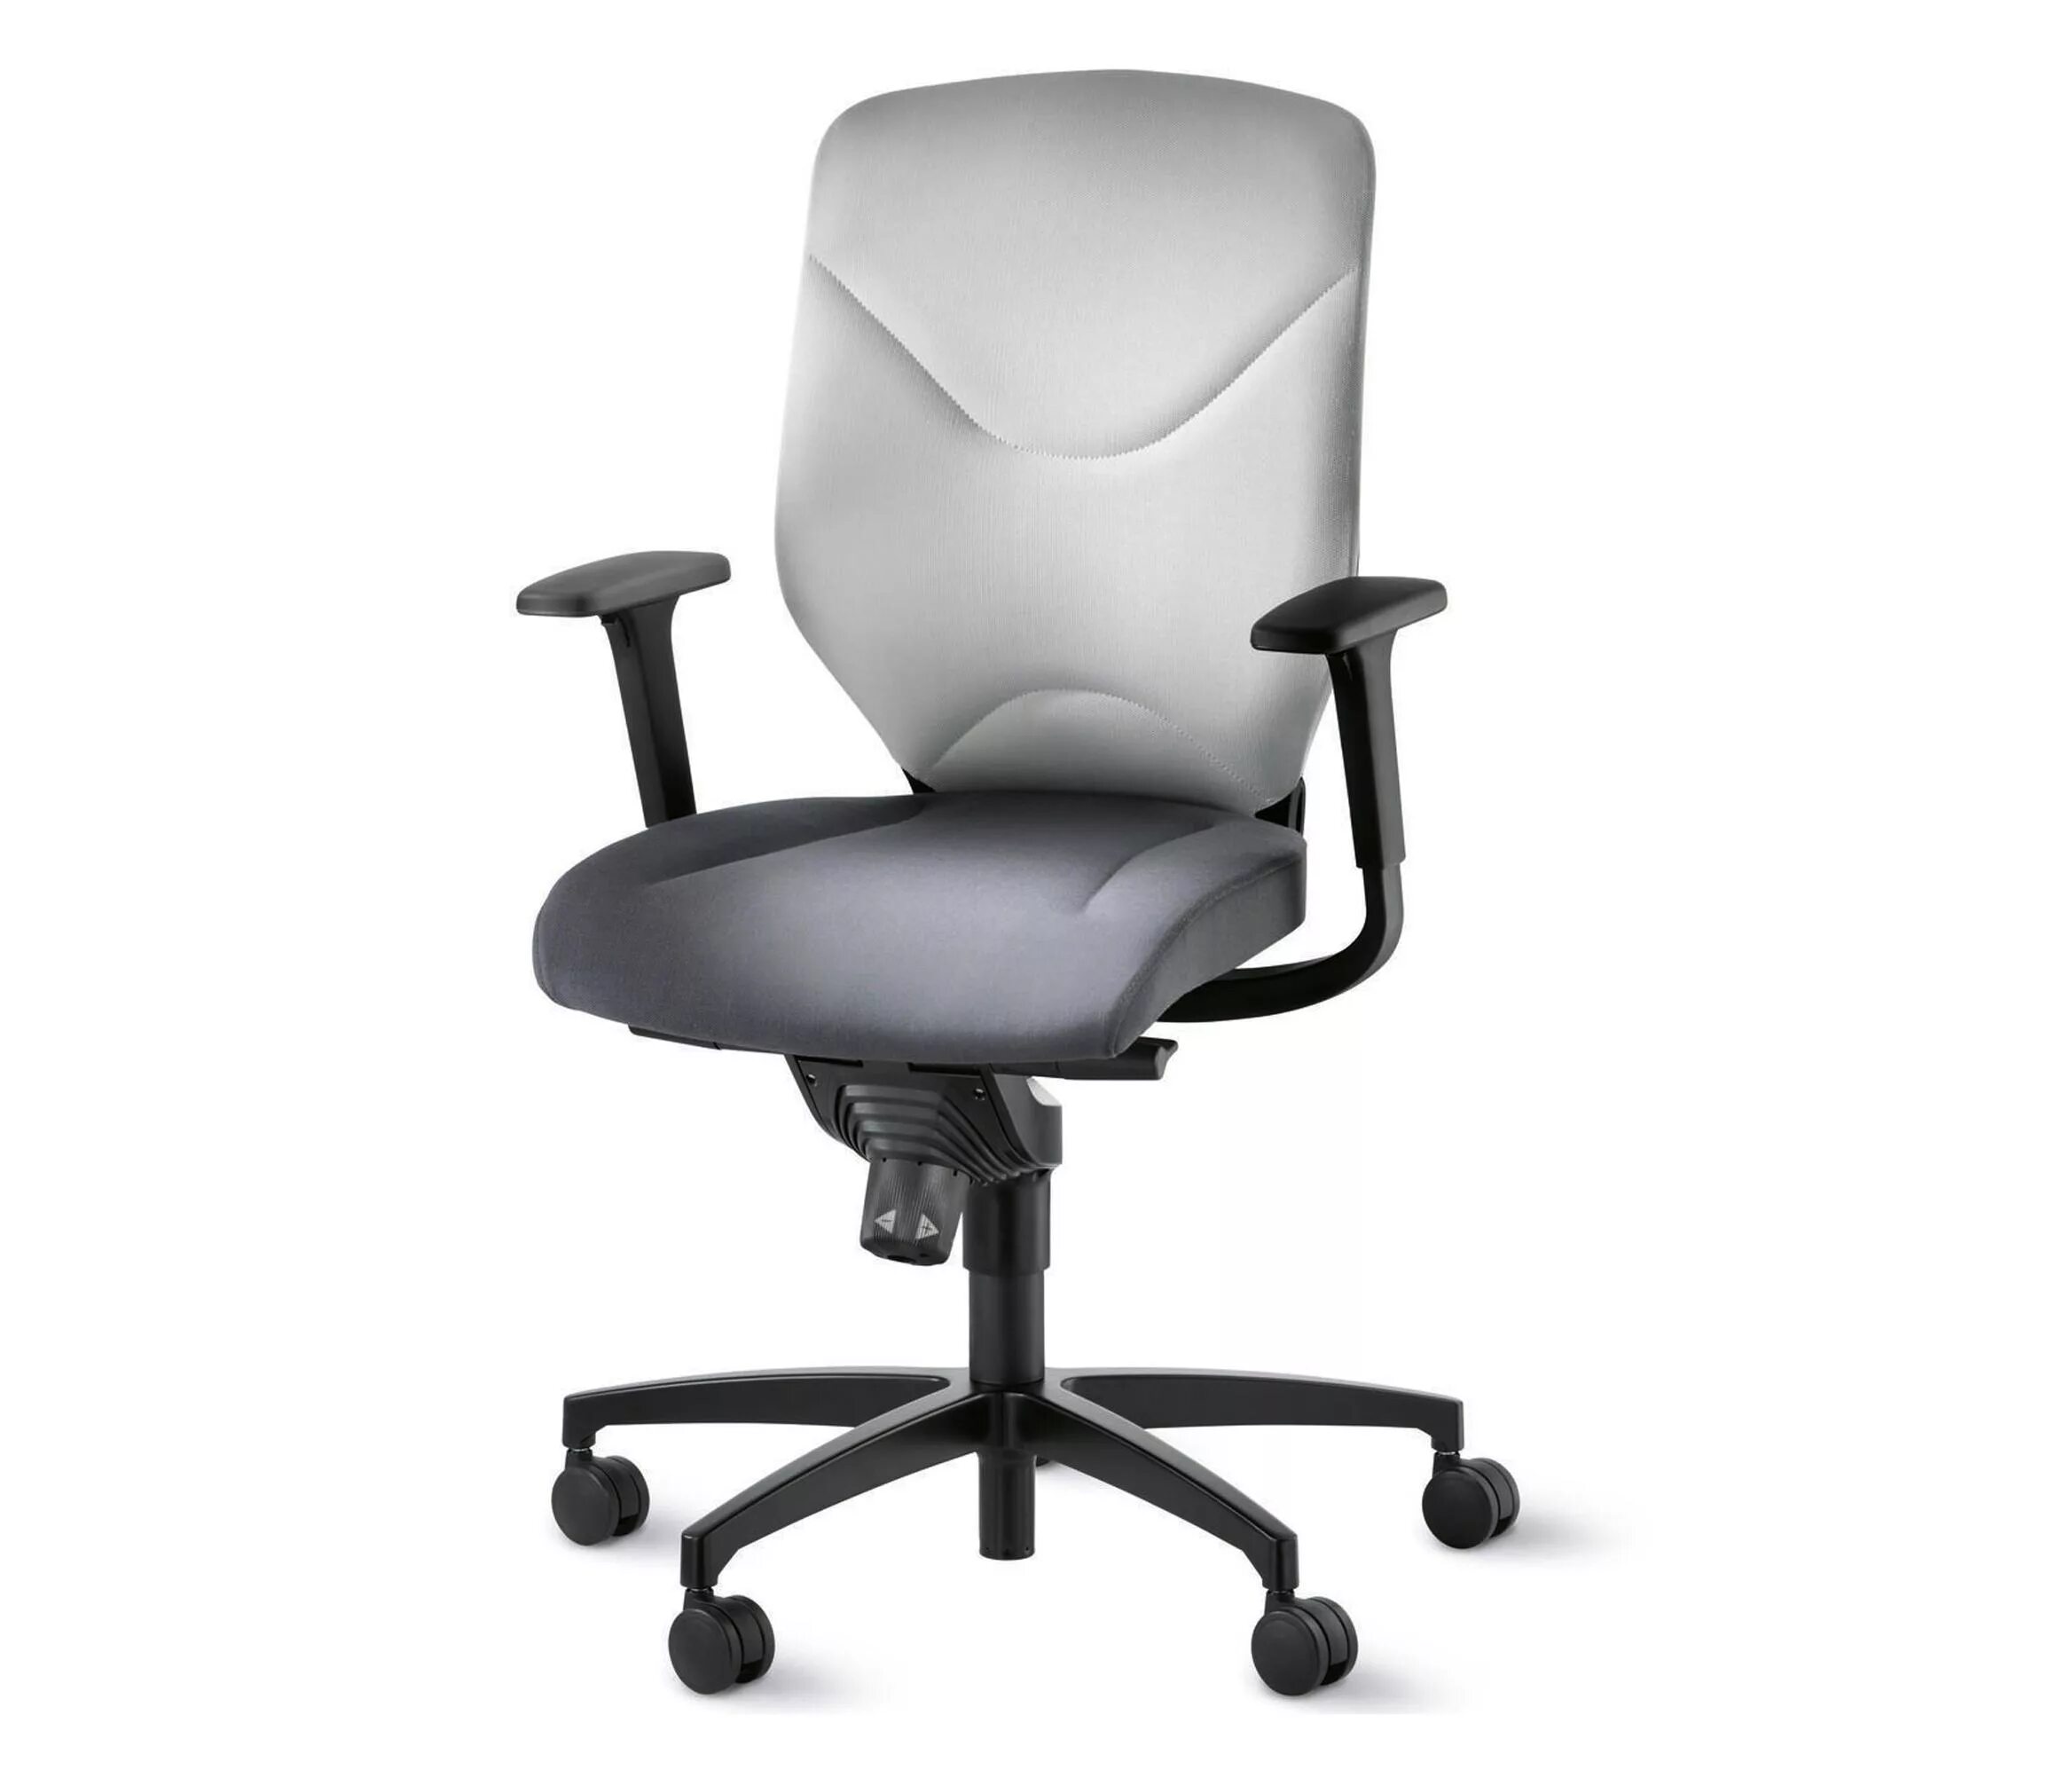 Стул офисный нова. Wilkhahn кресла. Эргономичное кресло Wilkhahn. Wilkhahn стулья офисные. Кресло с динамичной спинкой офисное.